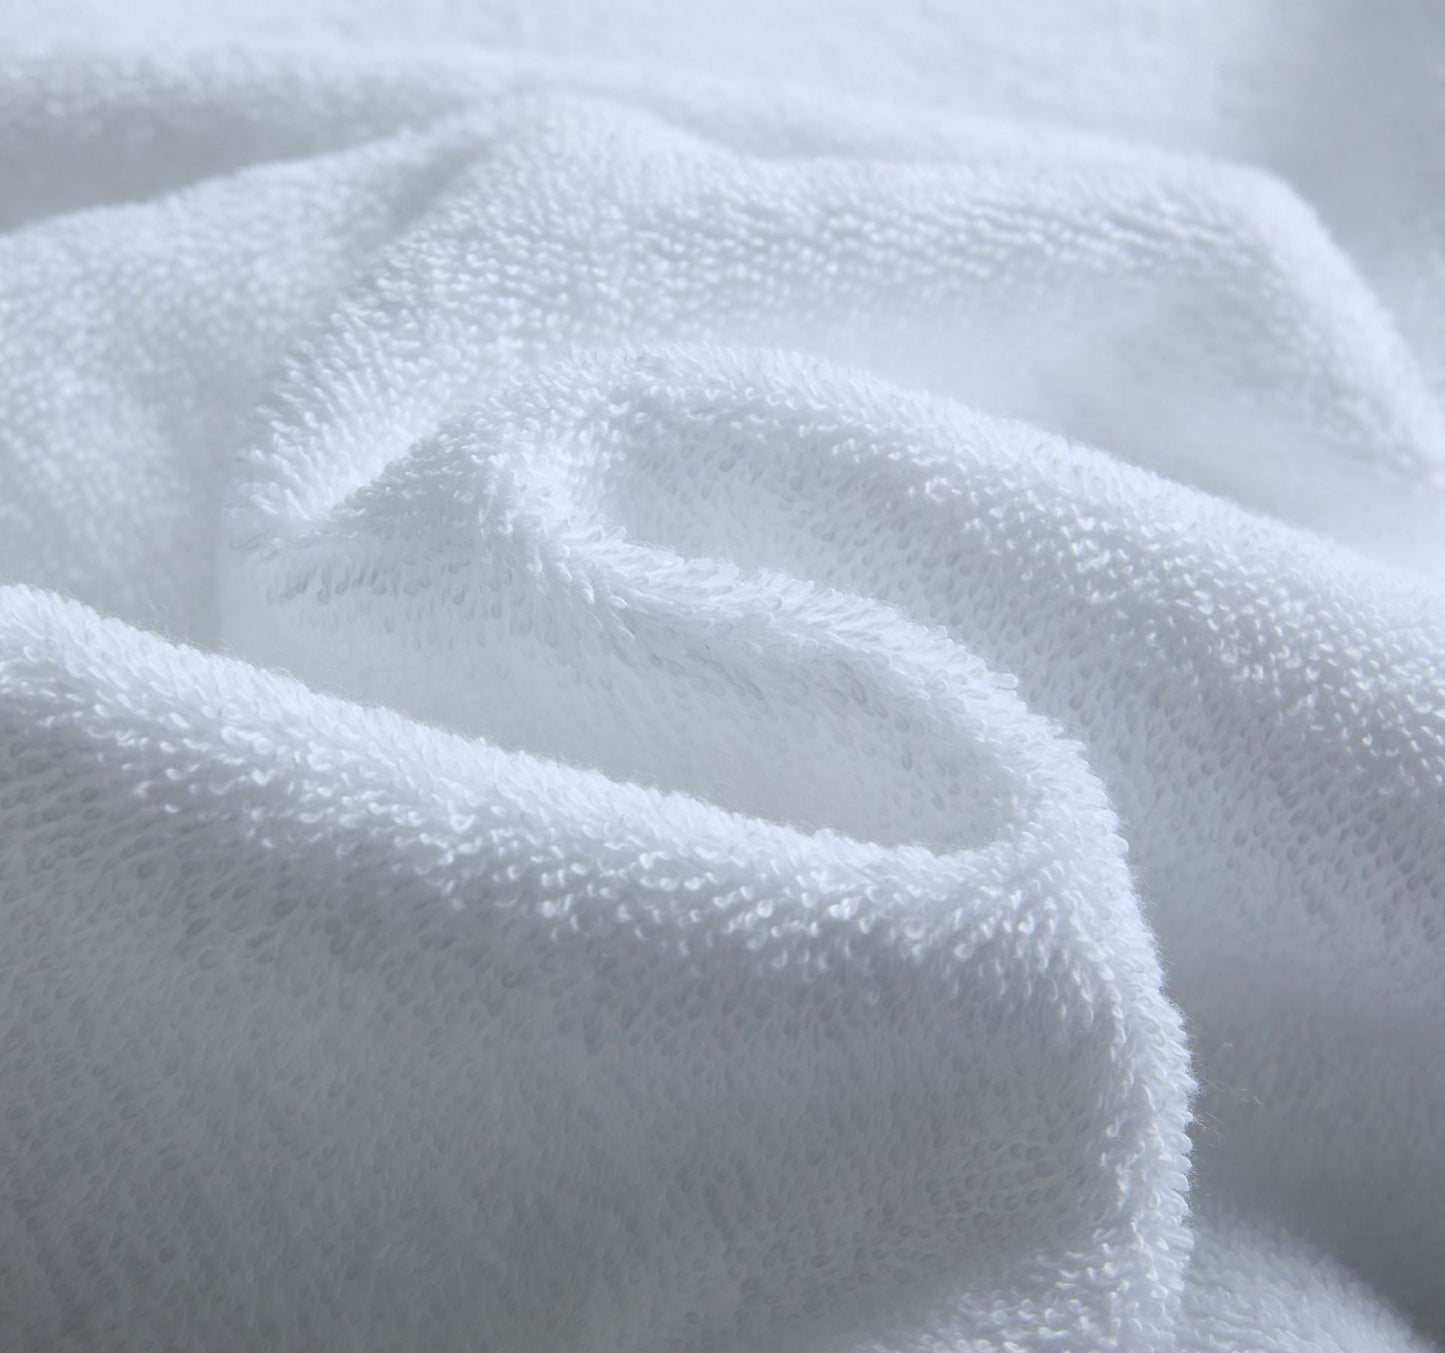 浴巾 70 x 140 厘米 600 GSM 100% 棉 速乾高吸水性 禮品